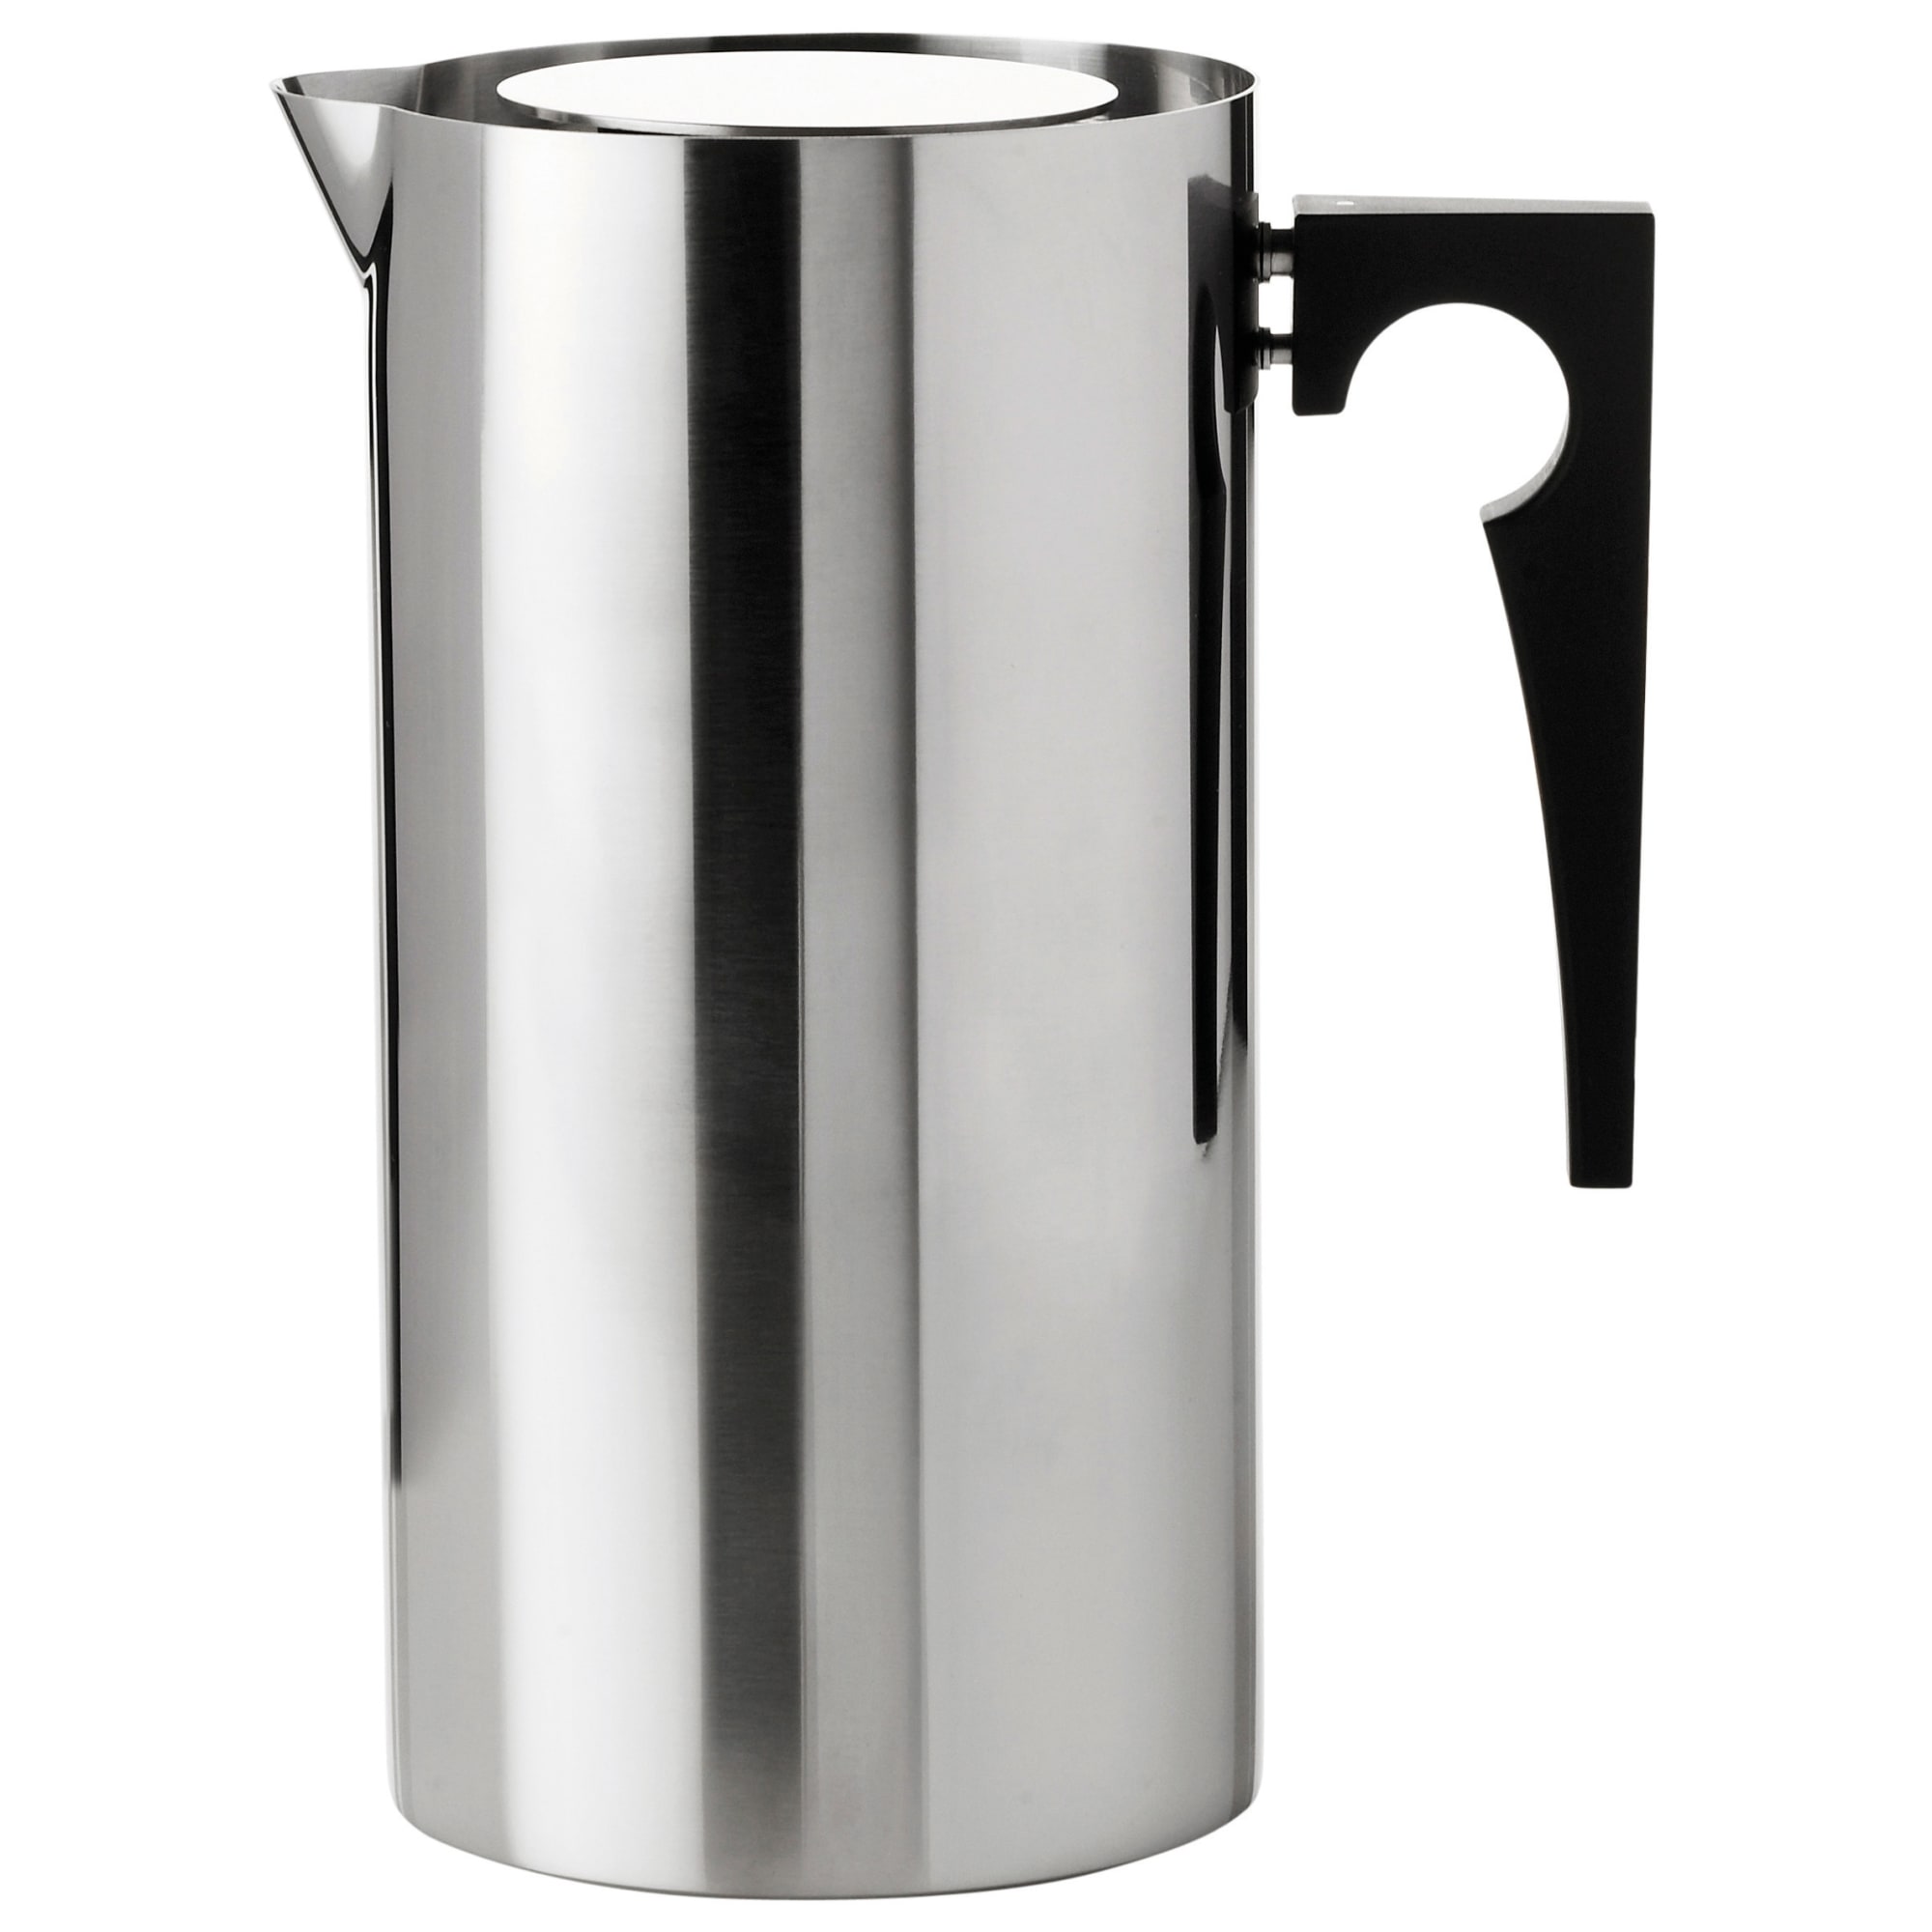 1 liter - Designet af Arne Jacobsen